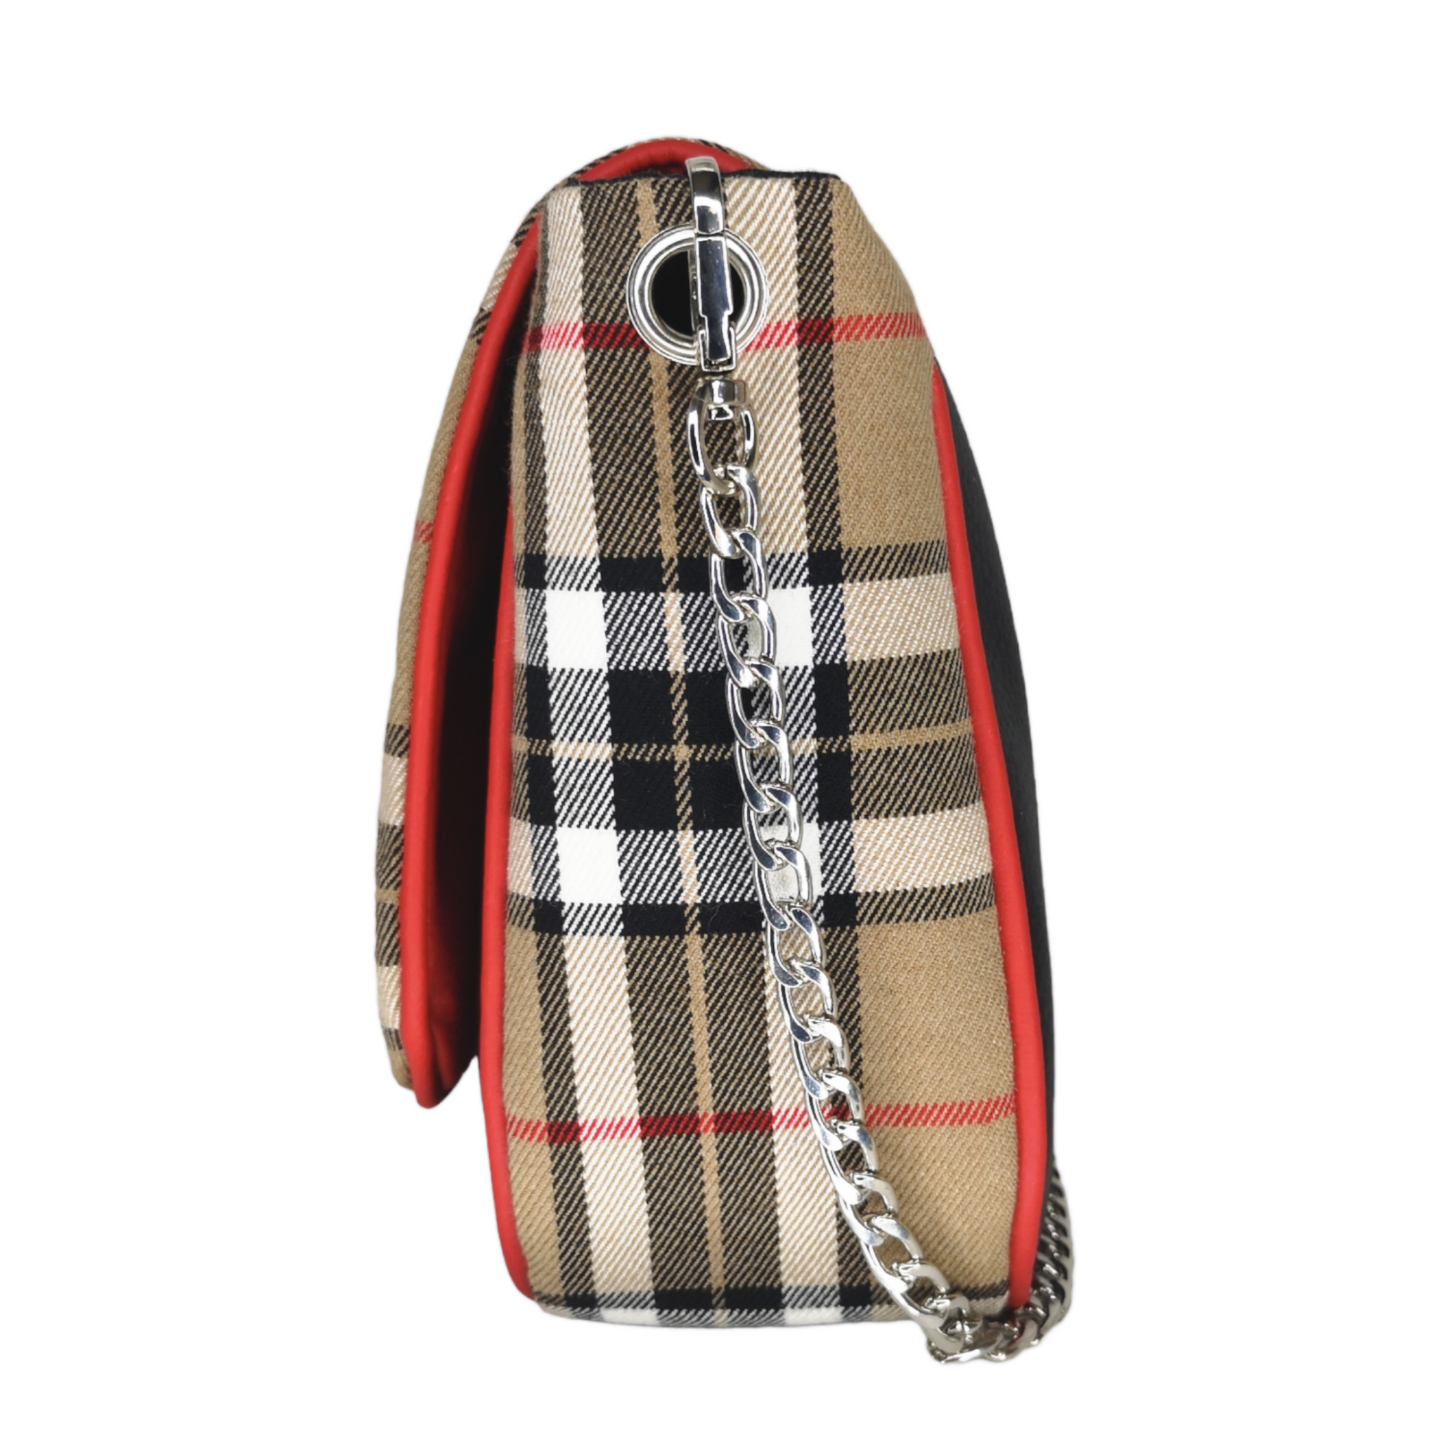 Sac à rabat motif tartan écossais camel, base décorée d'œillets argents en métal.  Muni d'un fermoir tourniquet argent et d'une chaîne argent bandoulière amovible.